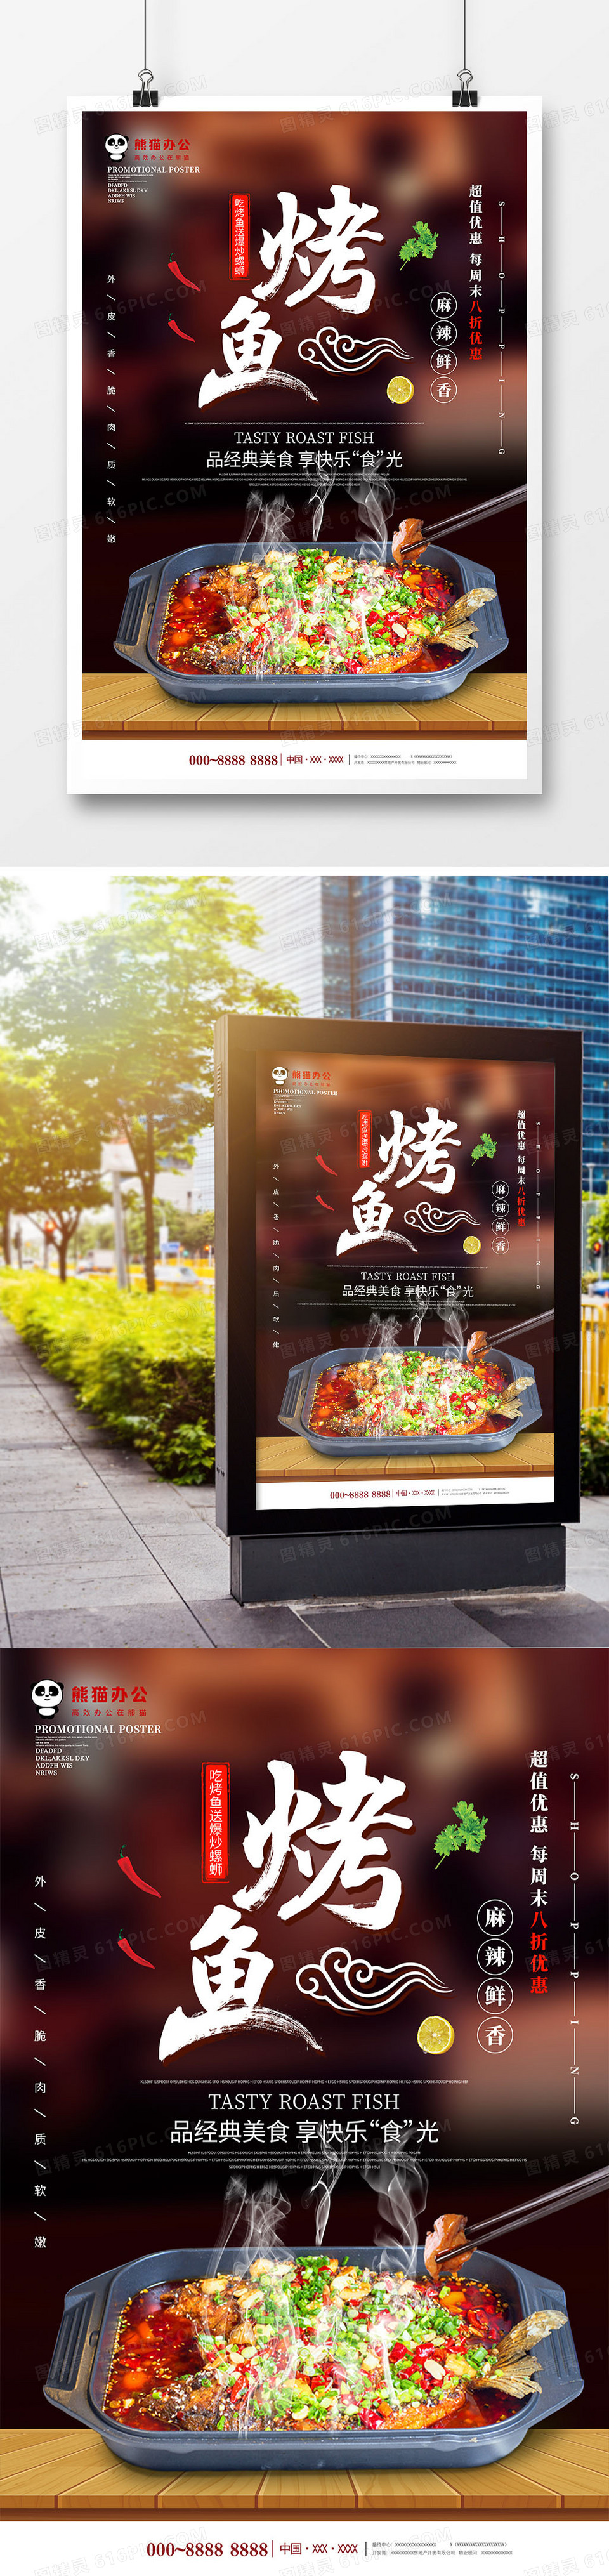 简约创意烤鱼美食海报模板设计